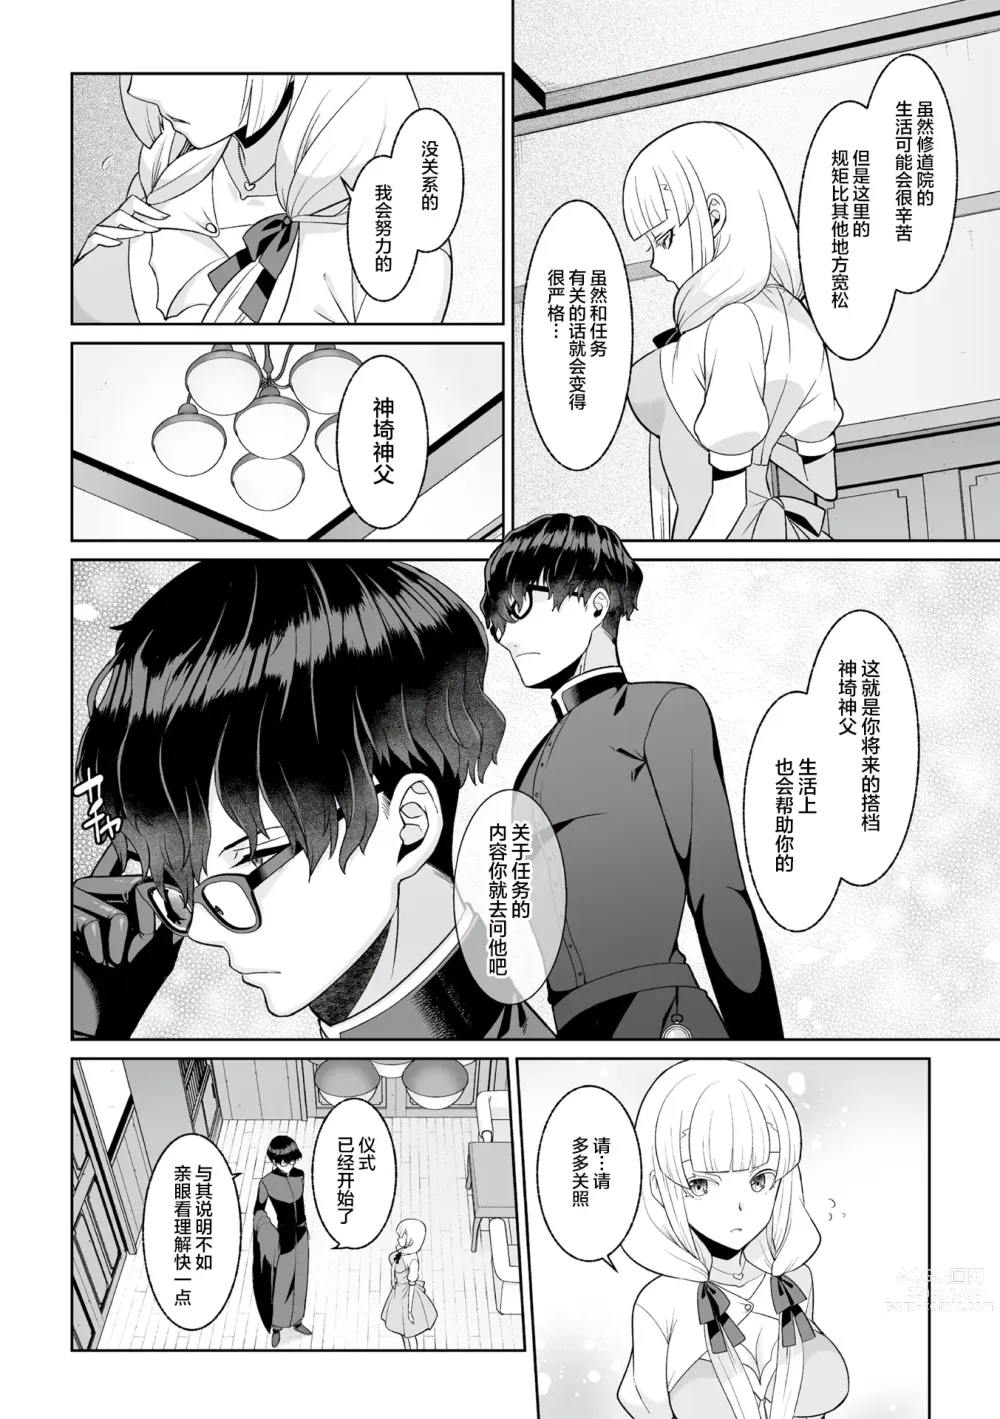 Page 7 of manga Tsukitei no Seijo Inmitsu no Utage Ch. 1